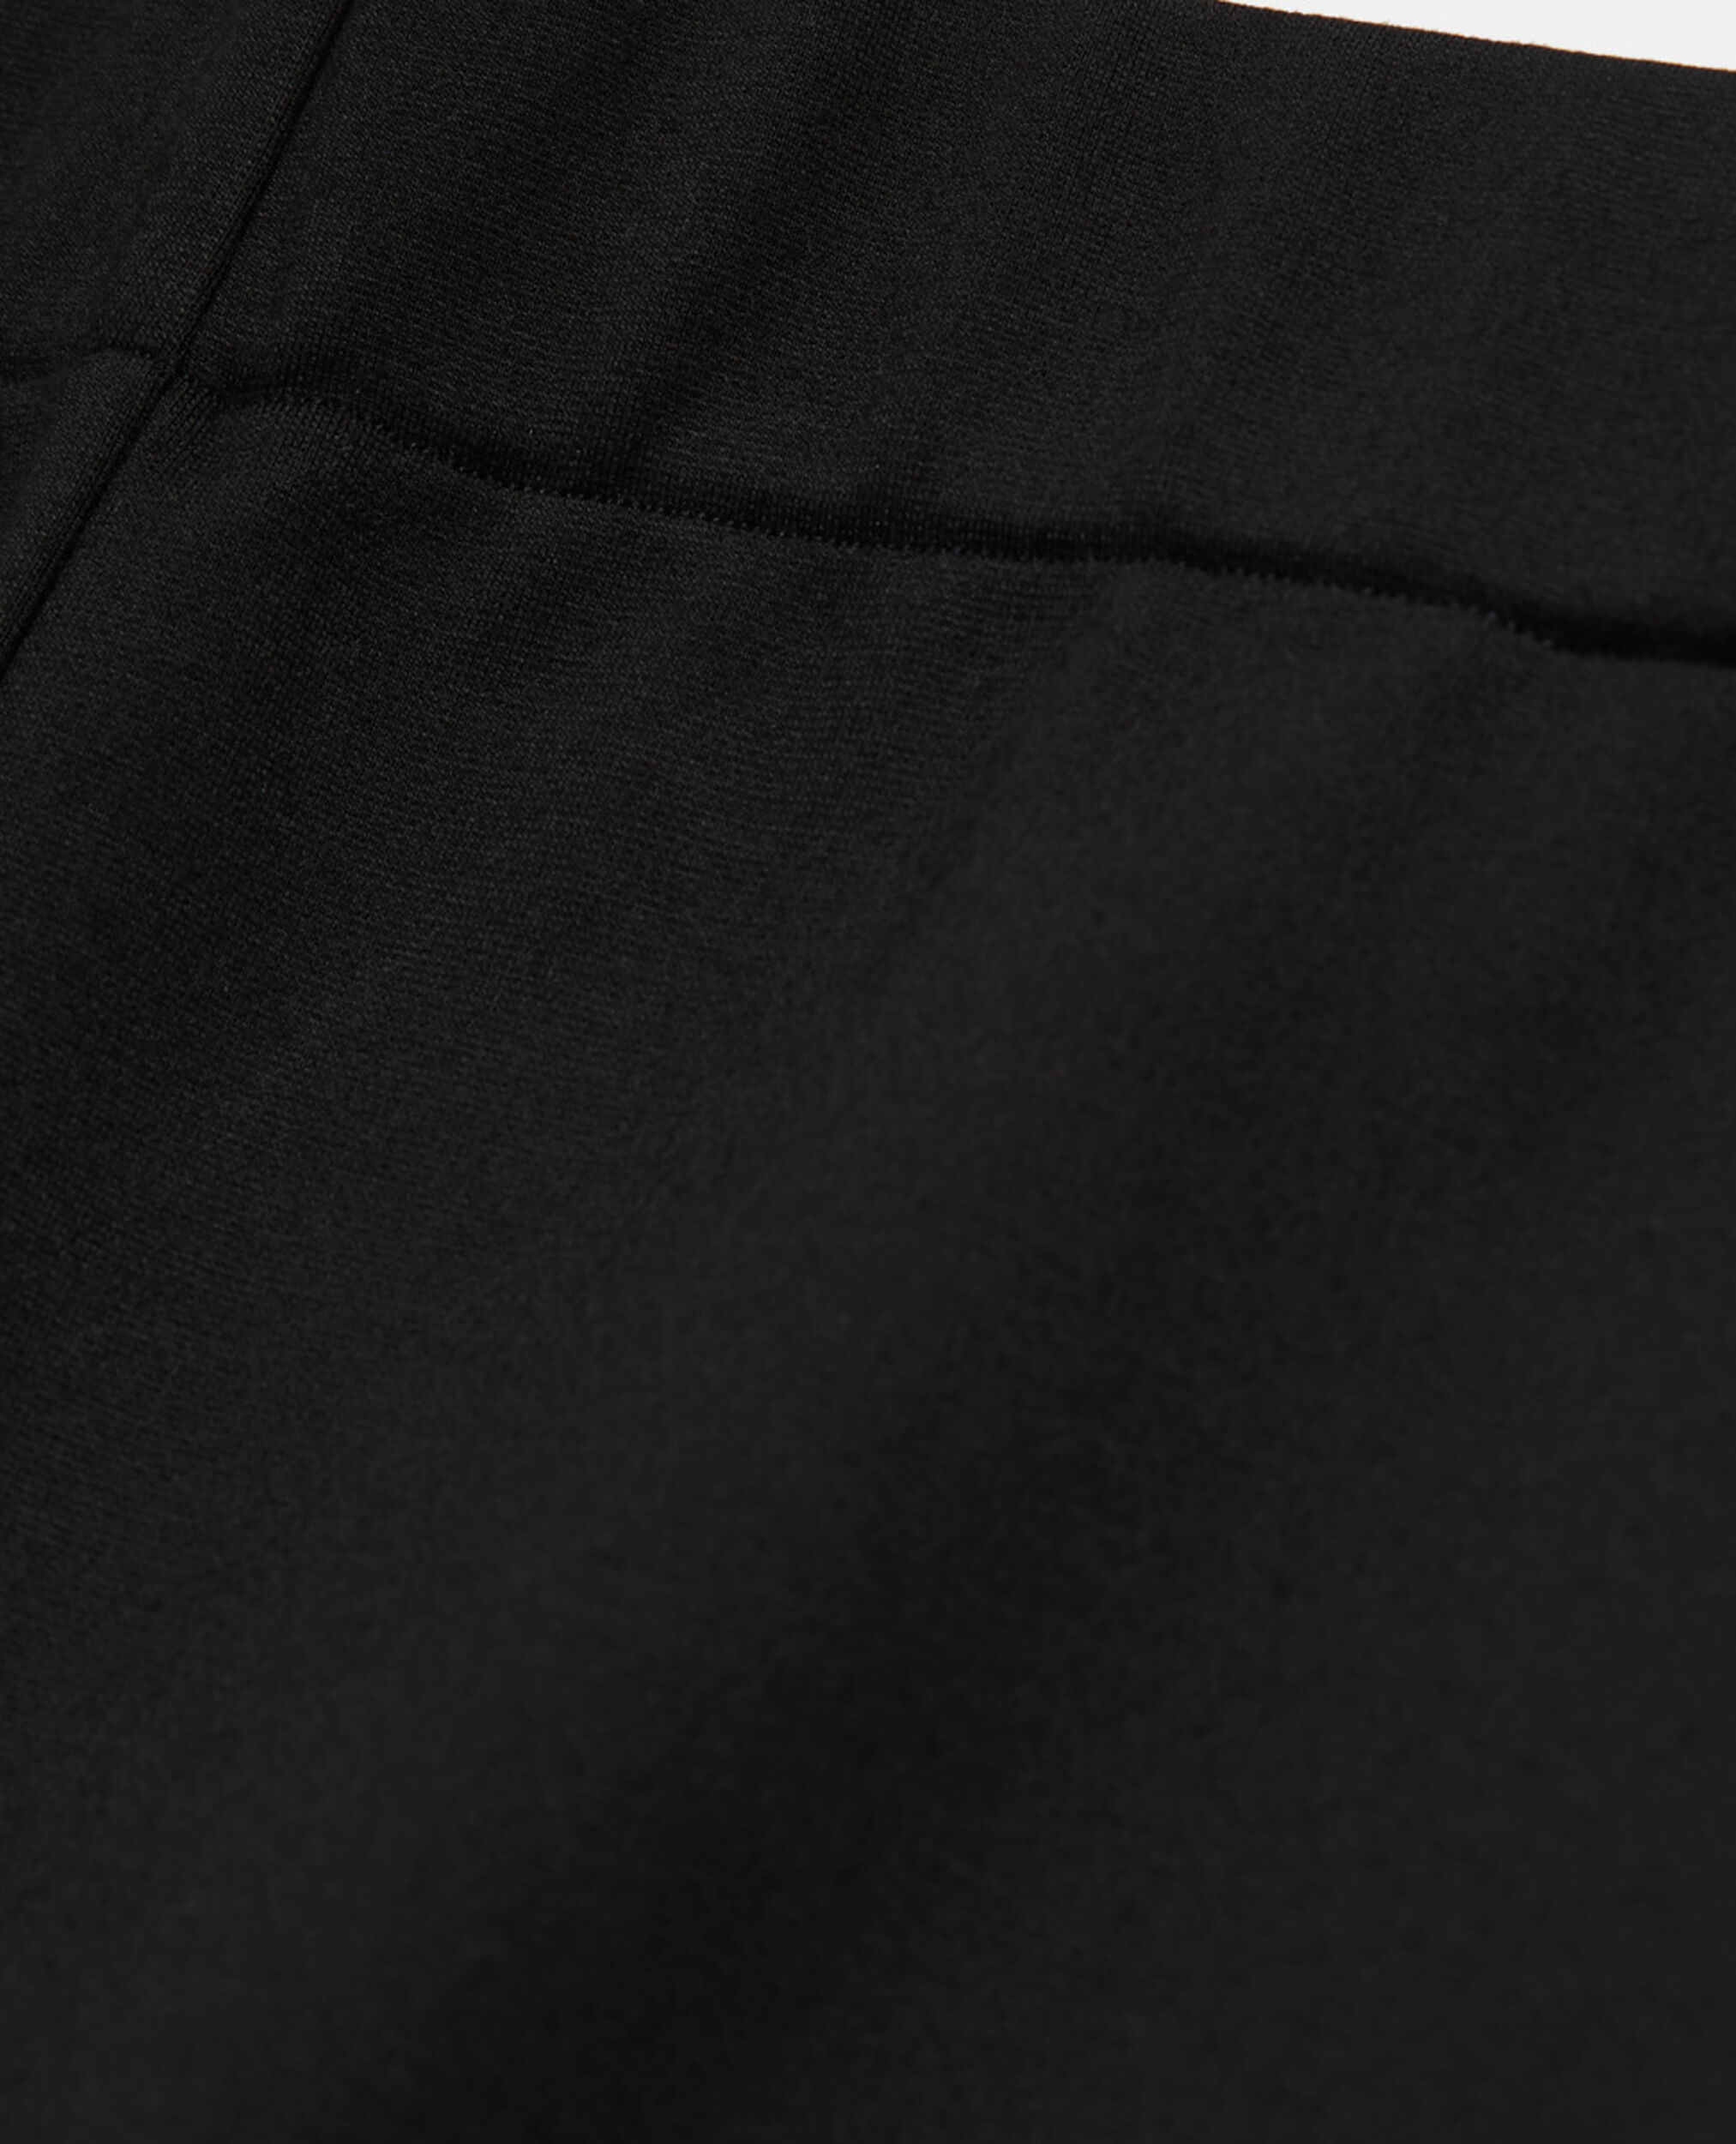 Pantalon flare noir, BLACK, hi-res image number null